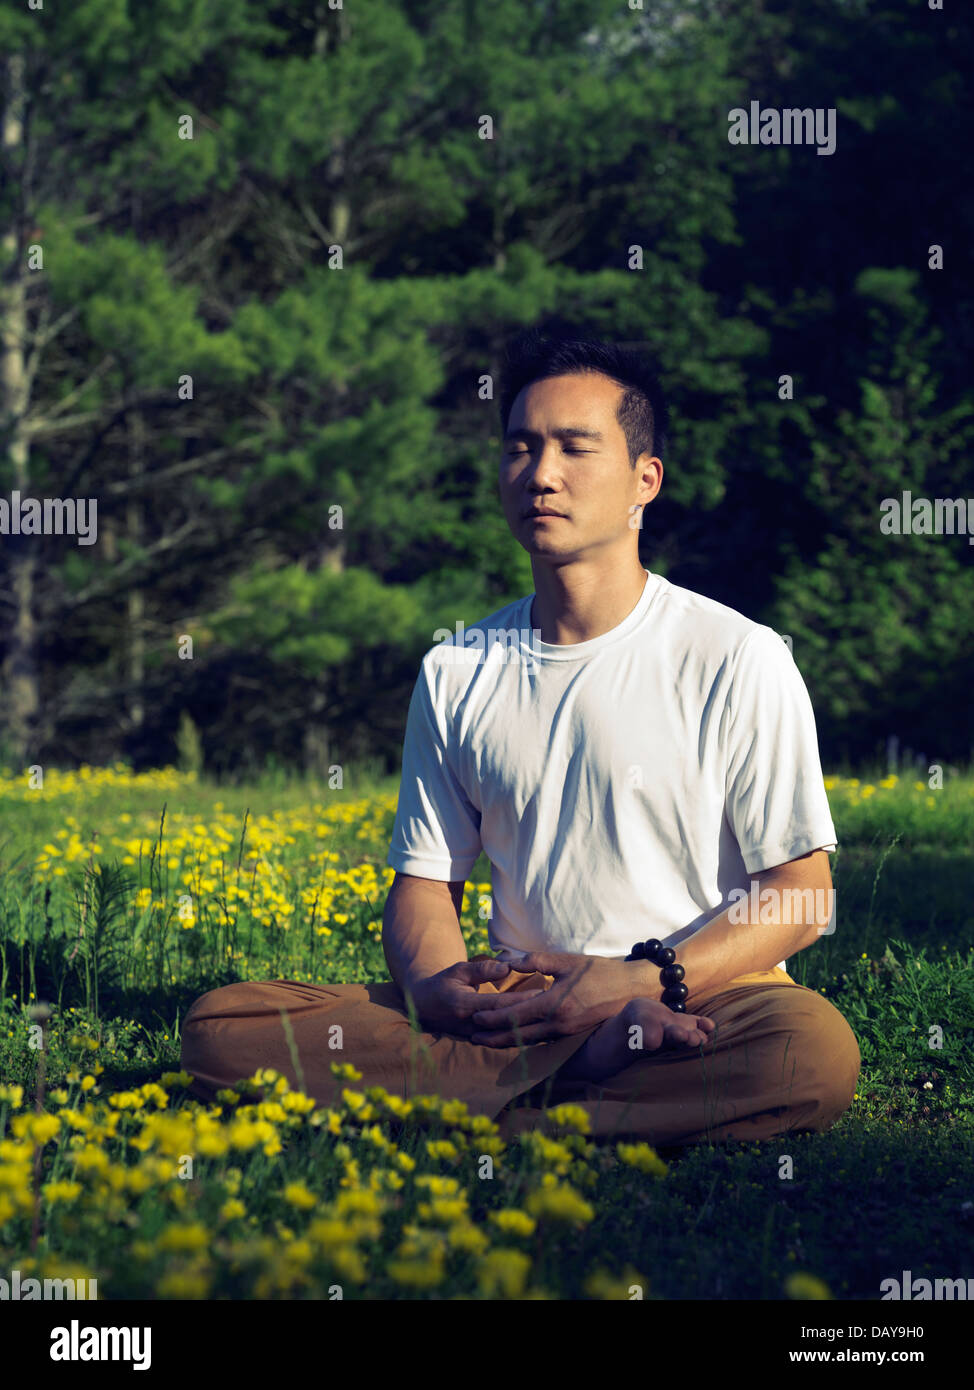 Licenza disponibile su MaximImages.com - uomo asiatico che pratica meditazione buddista cinese durante l'alba in uno scenario naturale estivo all'aperto Foto Stock